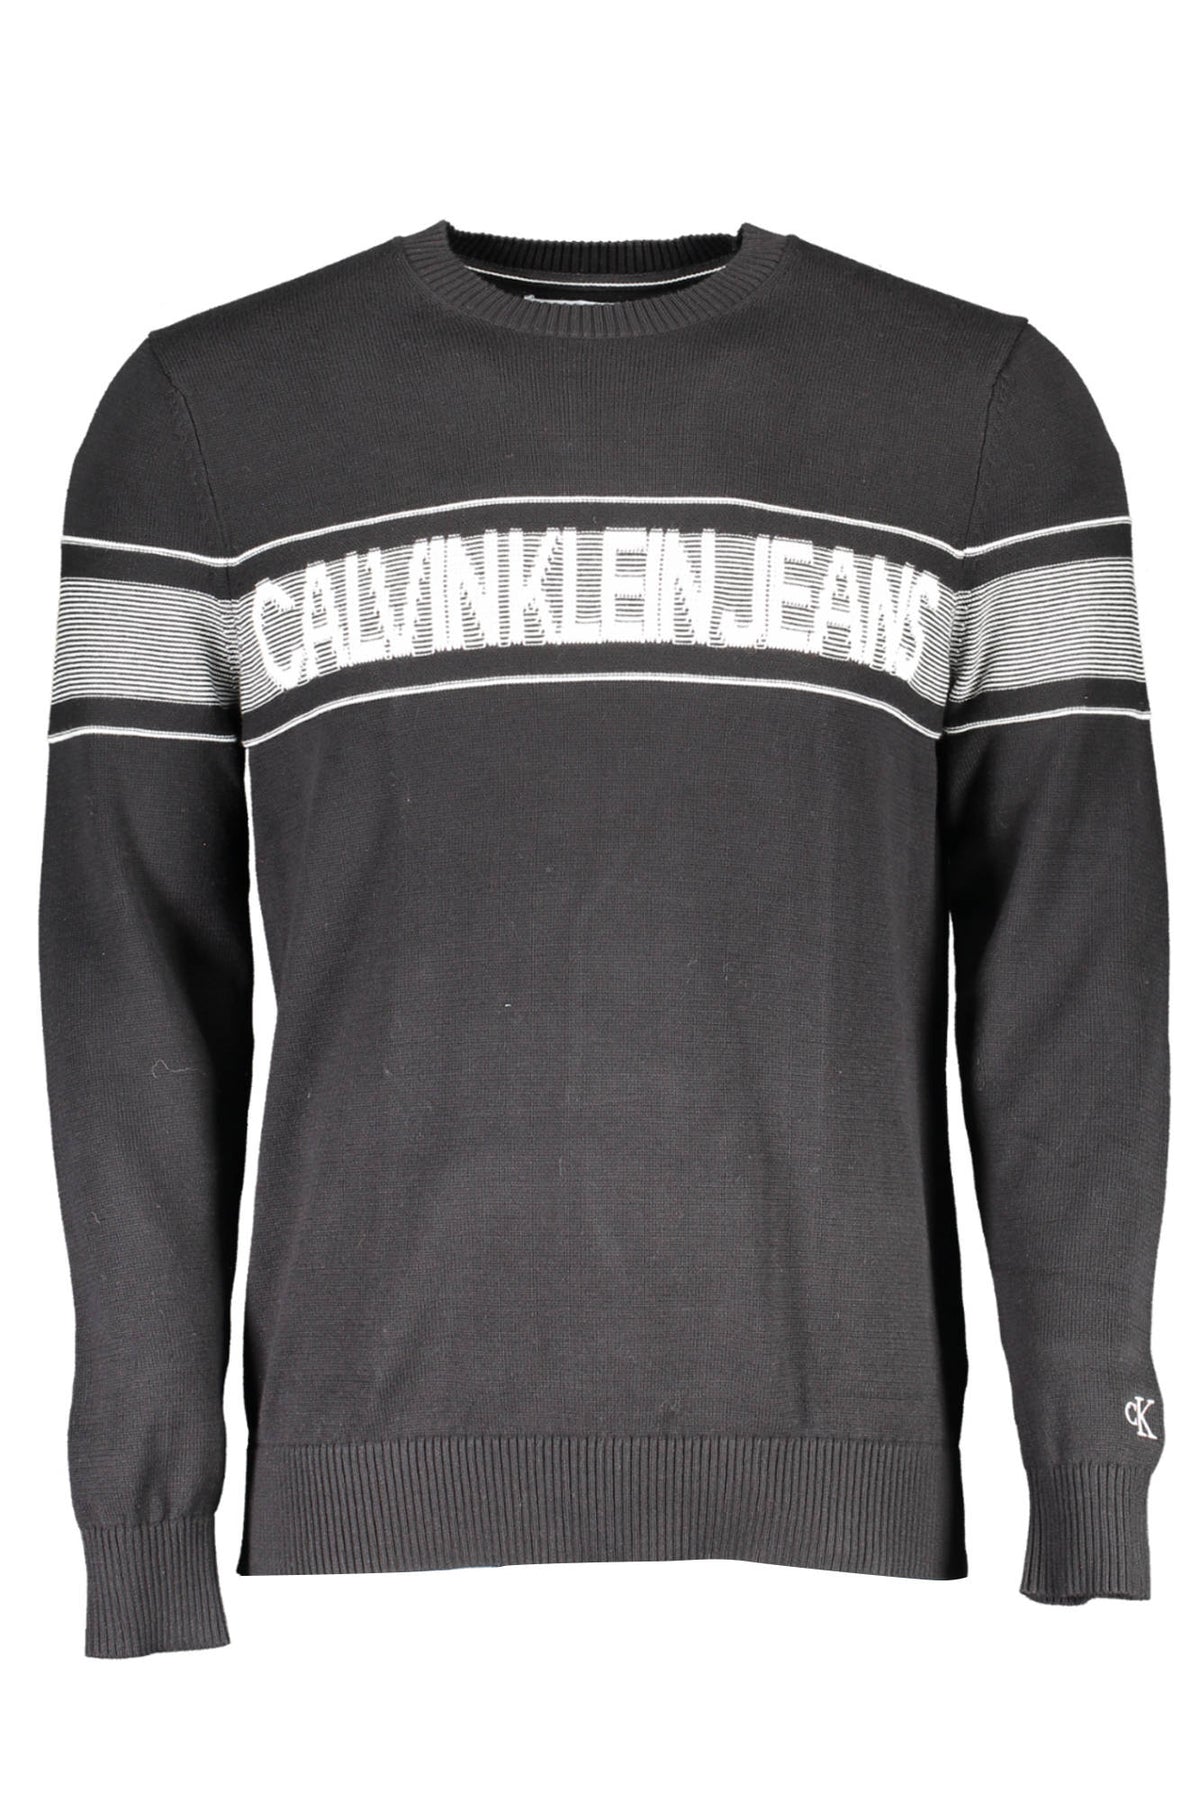 Calvin Klein Herren Pullover Sweatshirt mit Rundhalsausschnitt, langarm